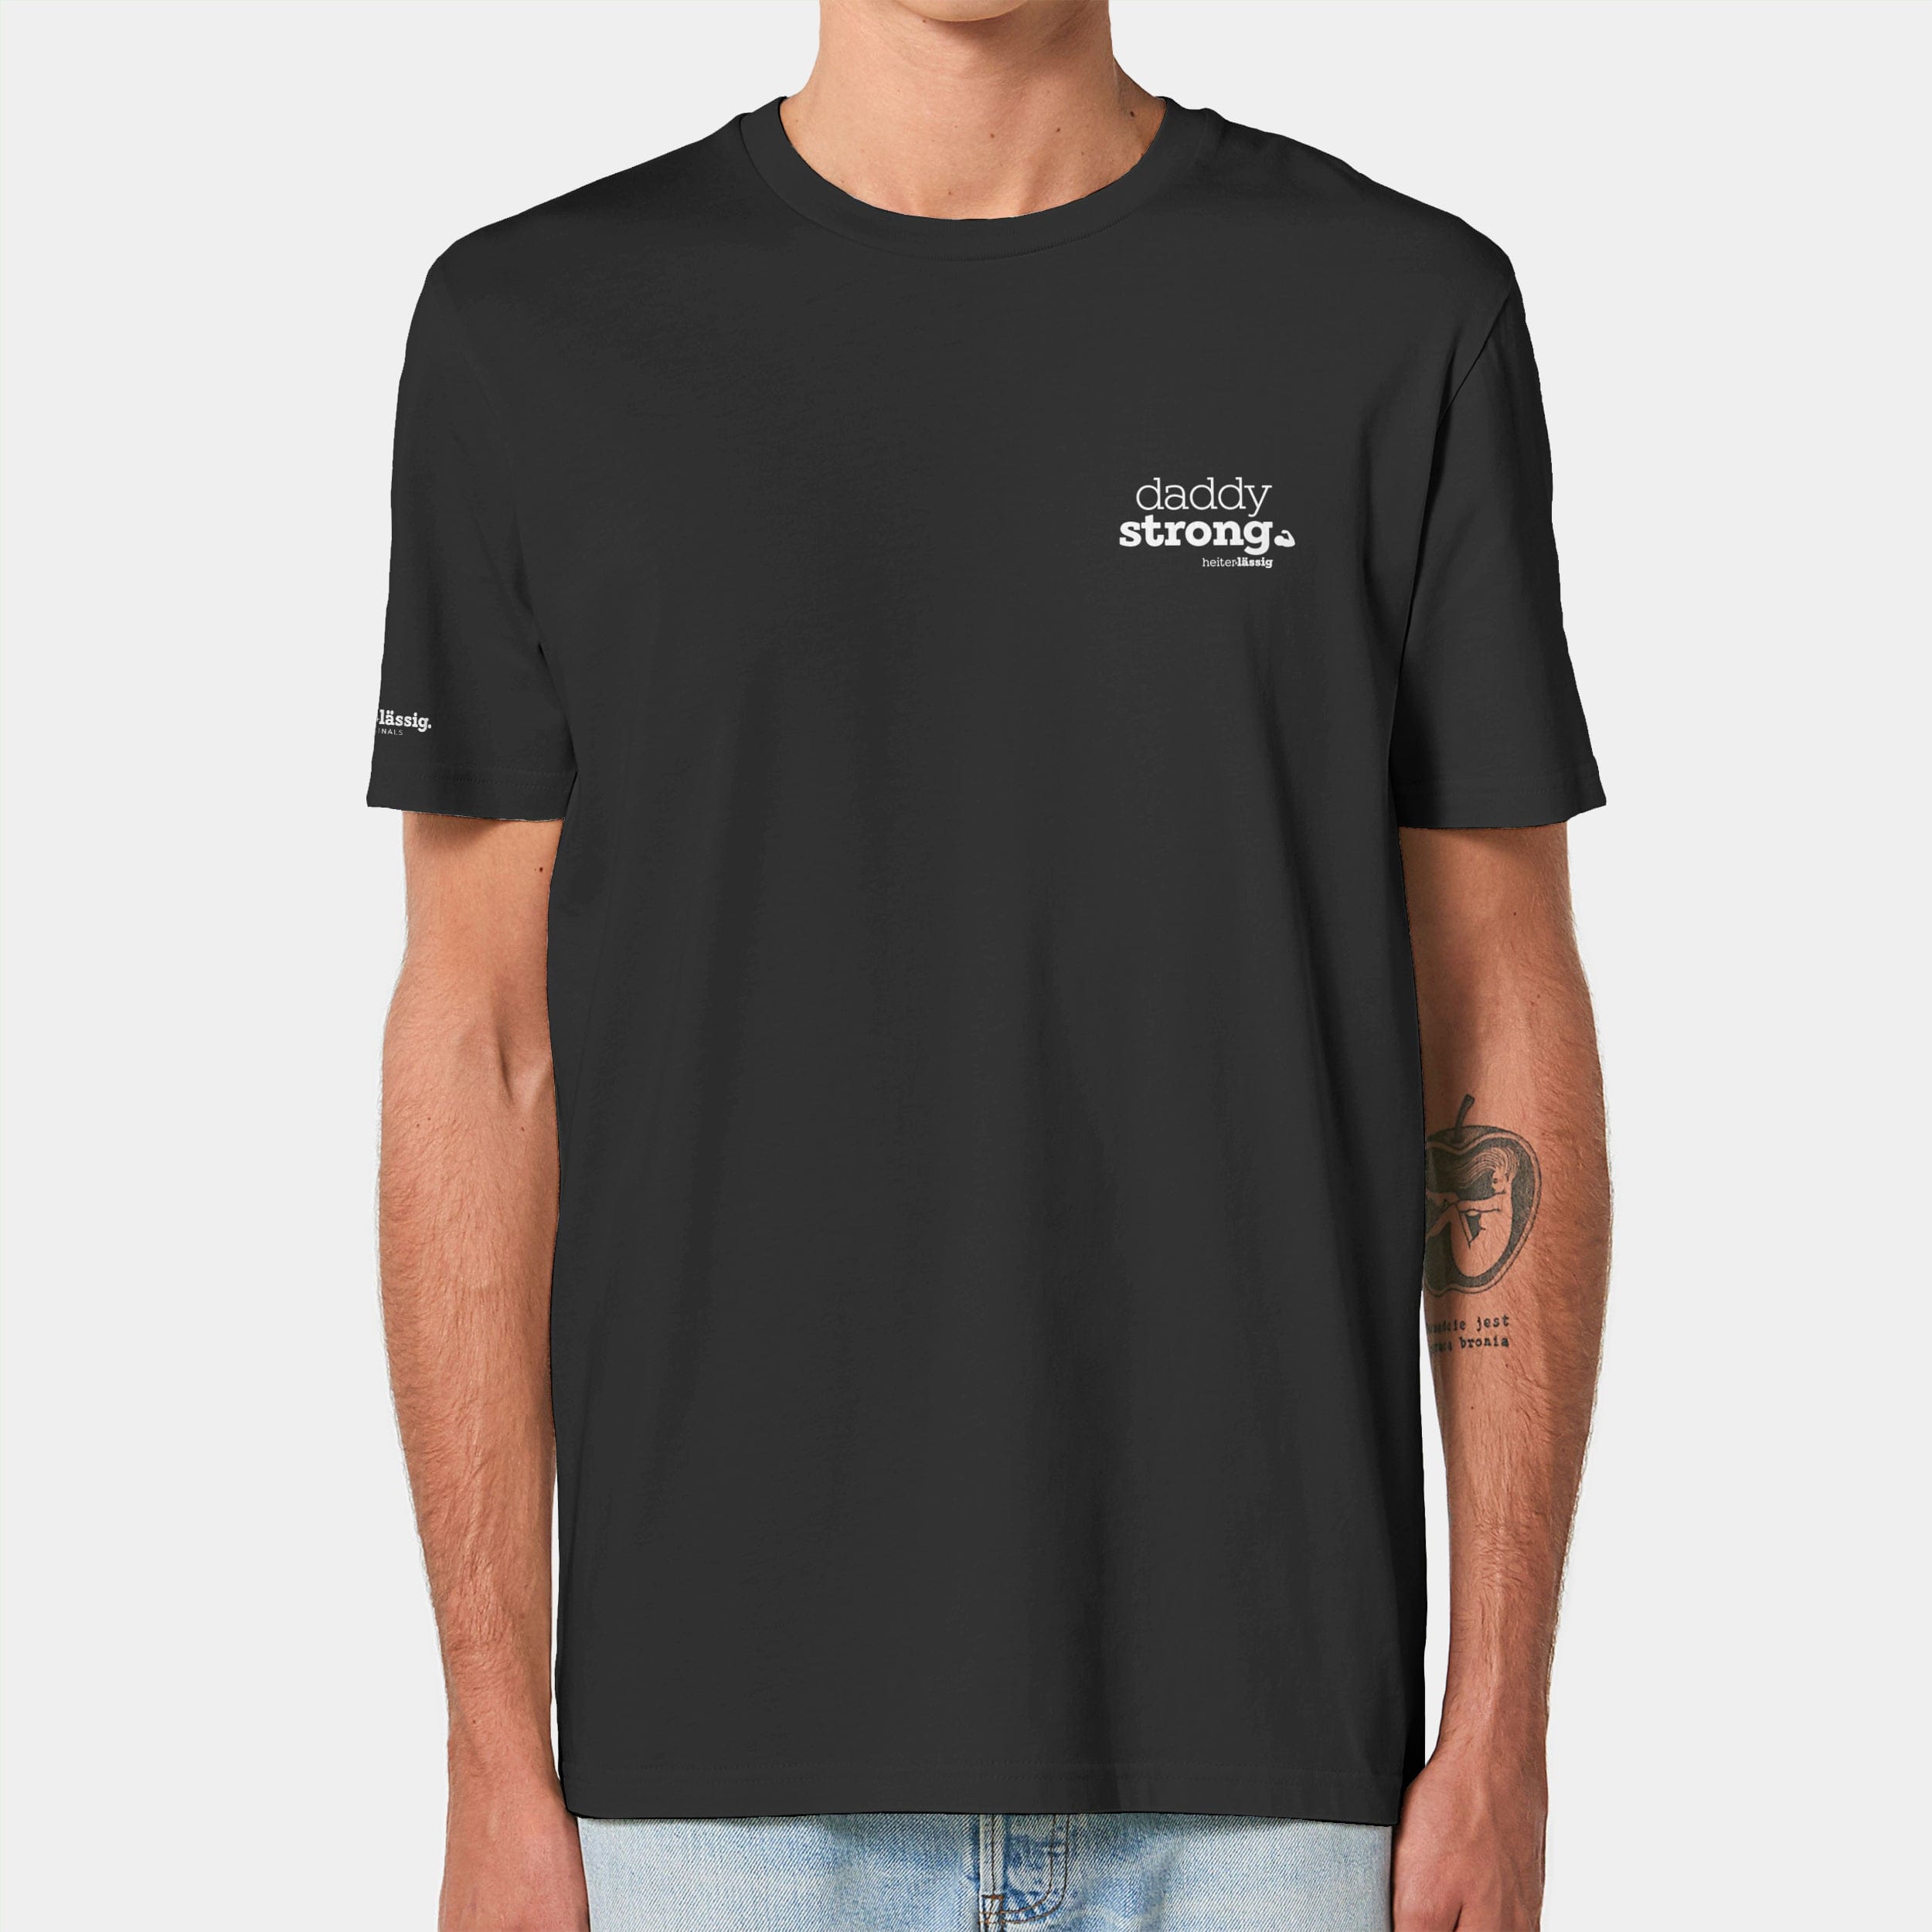 HEITER & LÄSSIG T-Shirt ORIGINAL "daddystrong" XXS / schwarz - aus nachhaltiger und fairer Produktion